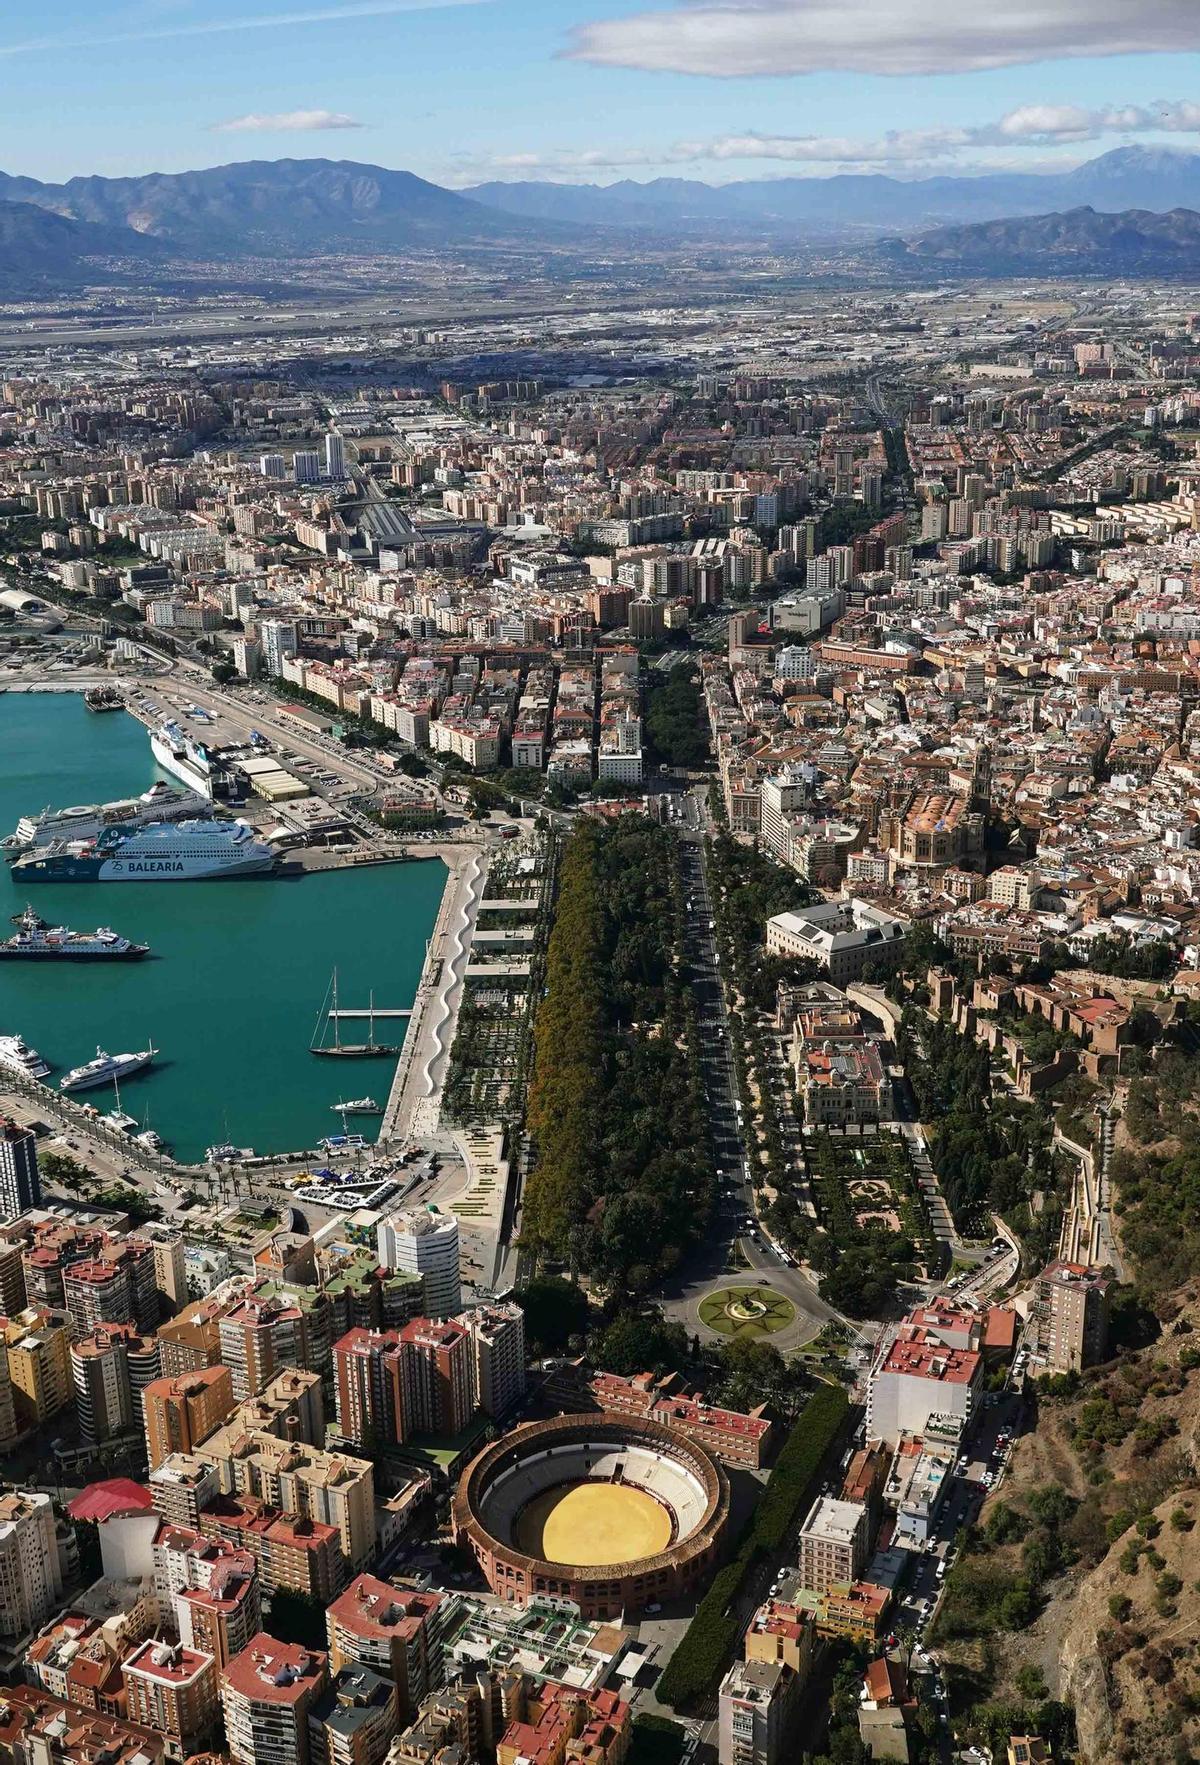 Imagen aérea de la ciudad de Málaga